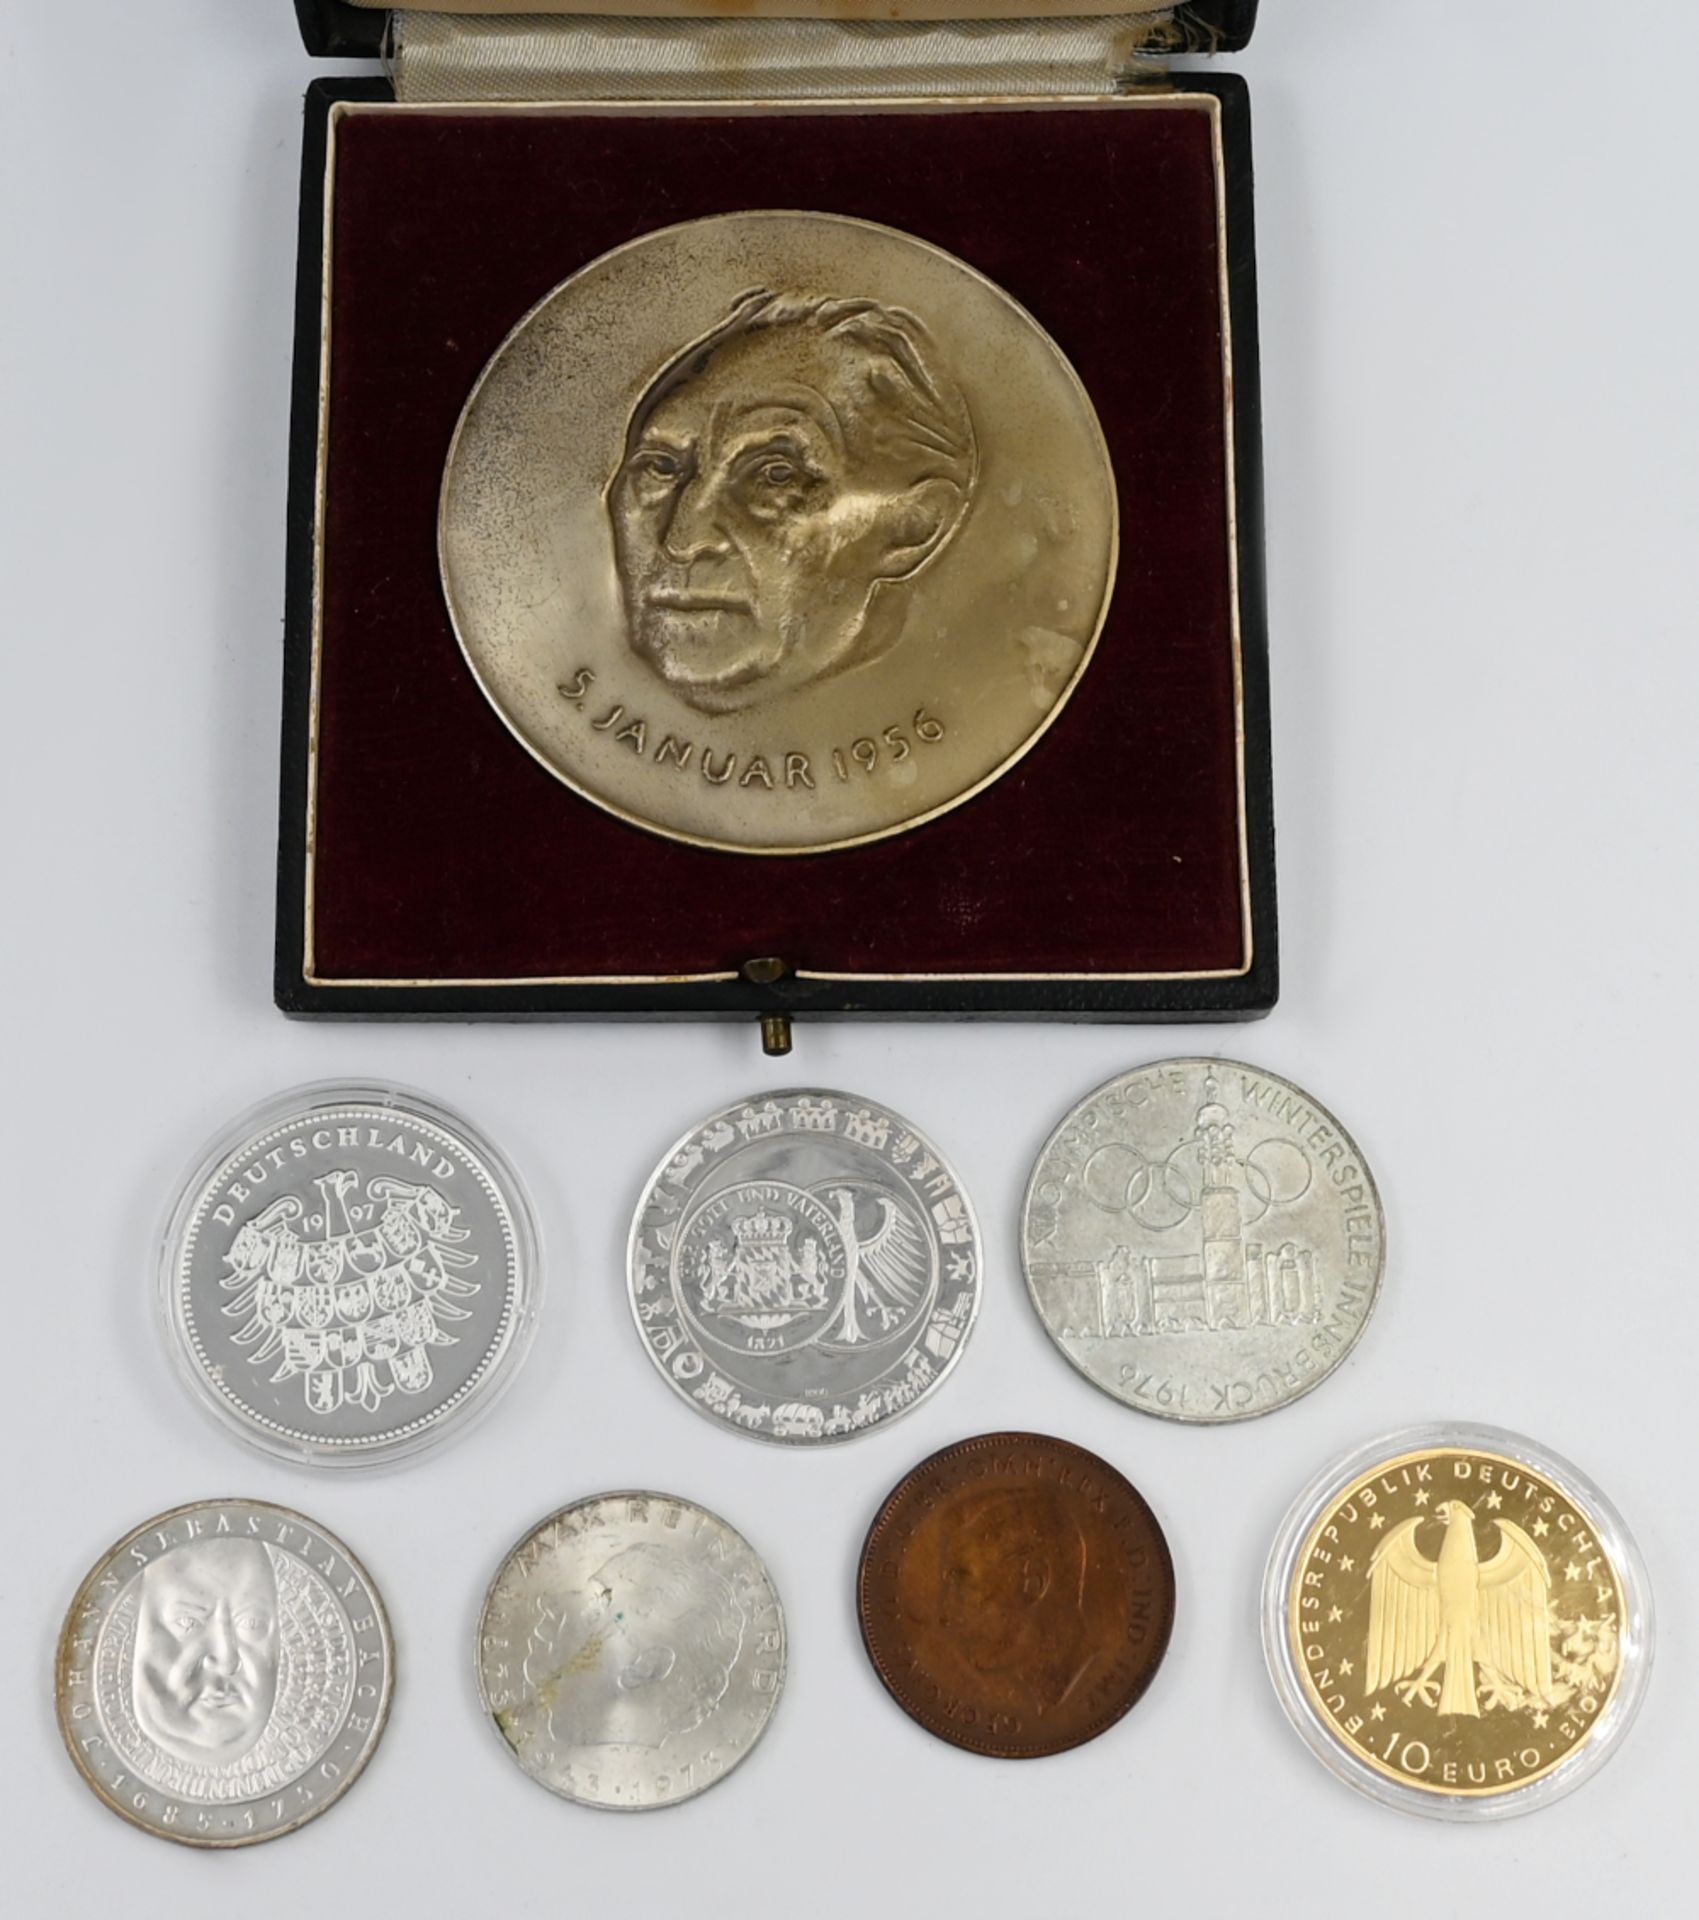 1 Konv. Münzen/Medaillen: Silber, Metall u.a., z.B. BRD 10 Euro, wohl vergoldet, Österreich, Adenaue